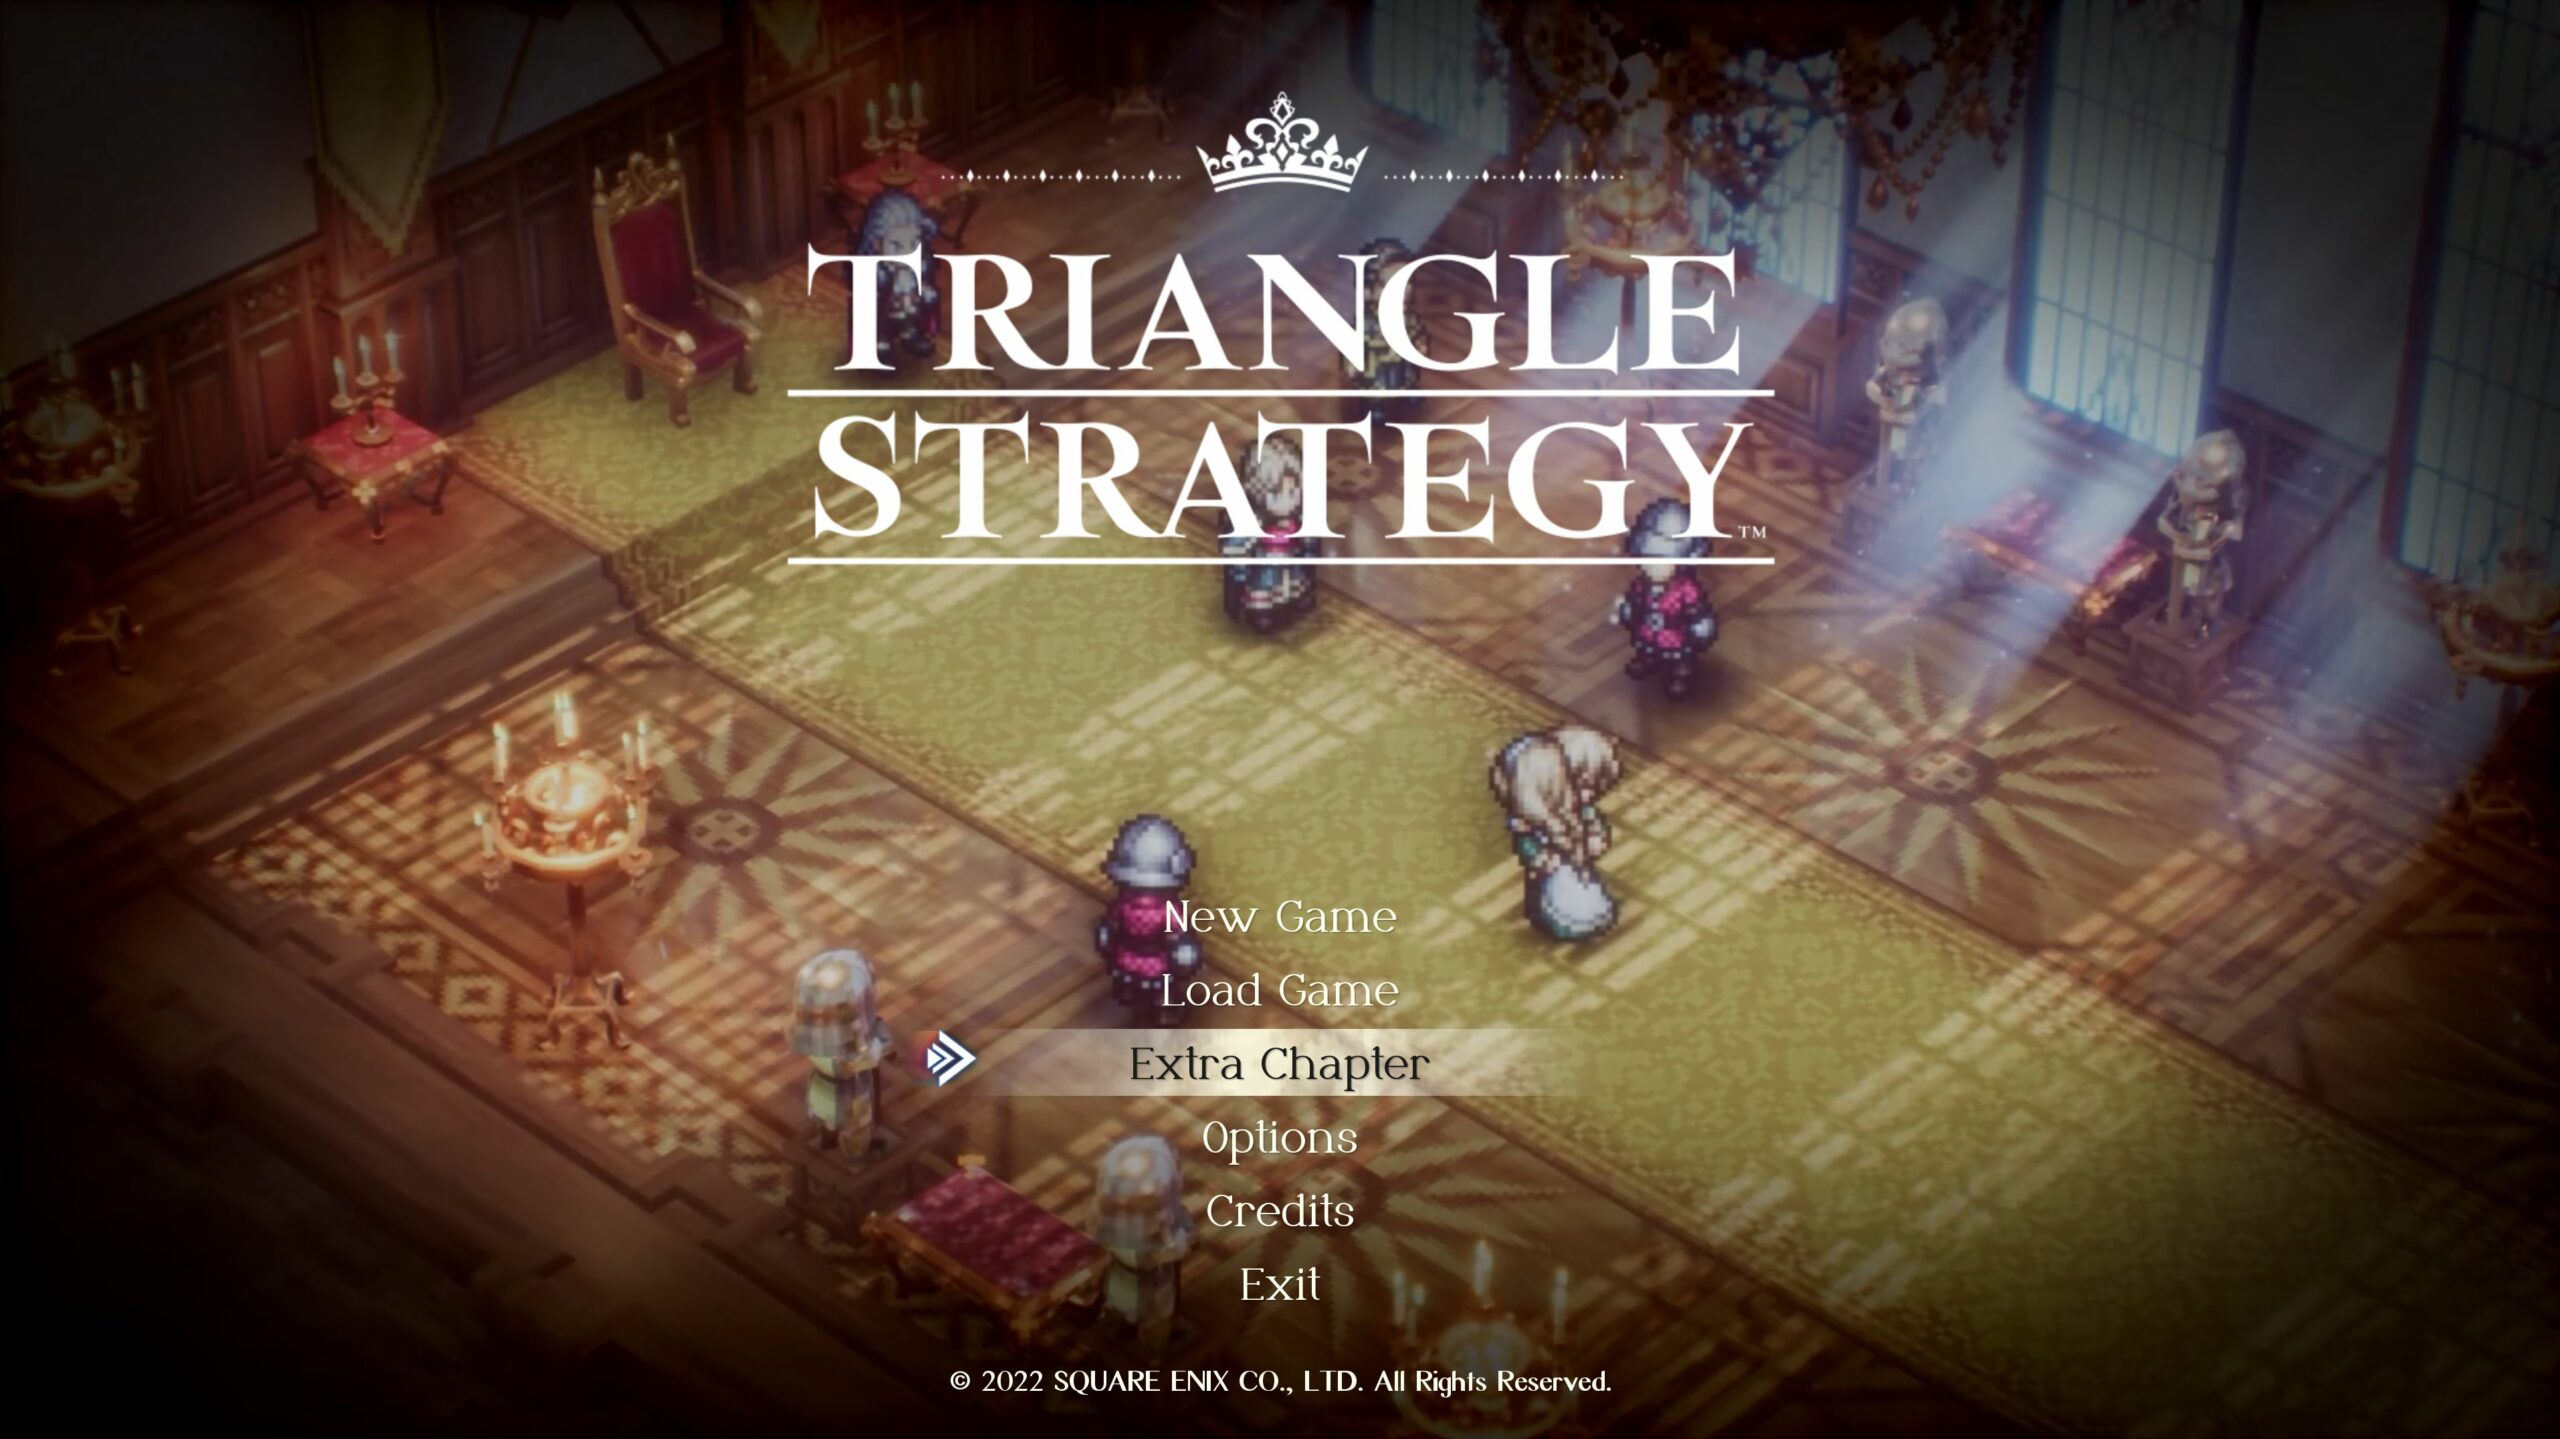 #Triangle Strategy erhält überraschendes Update mit neuen Spielinhalten und Features